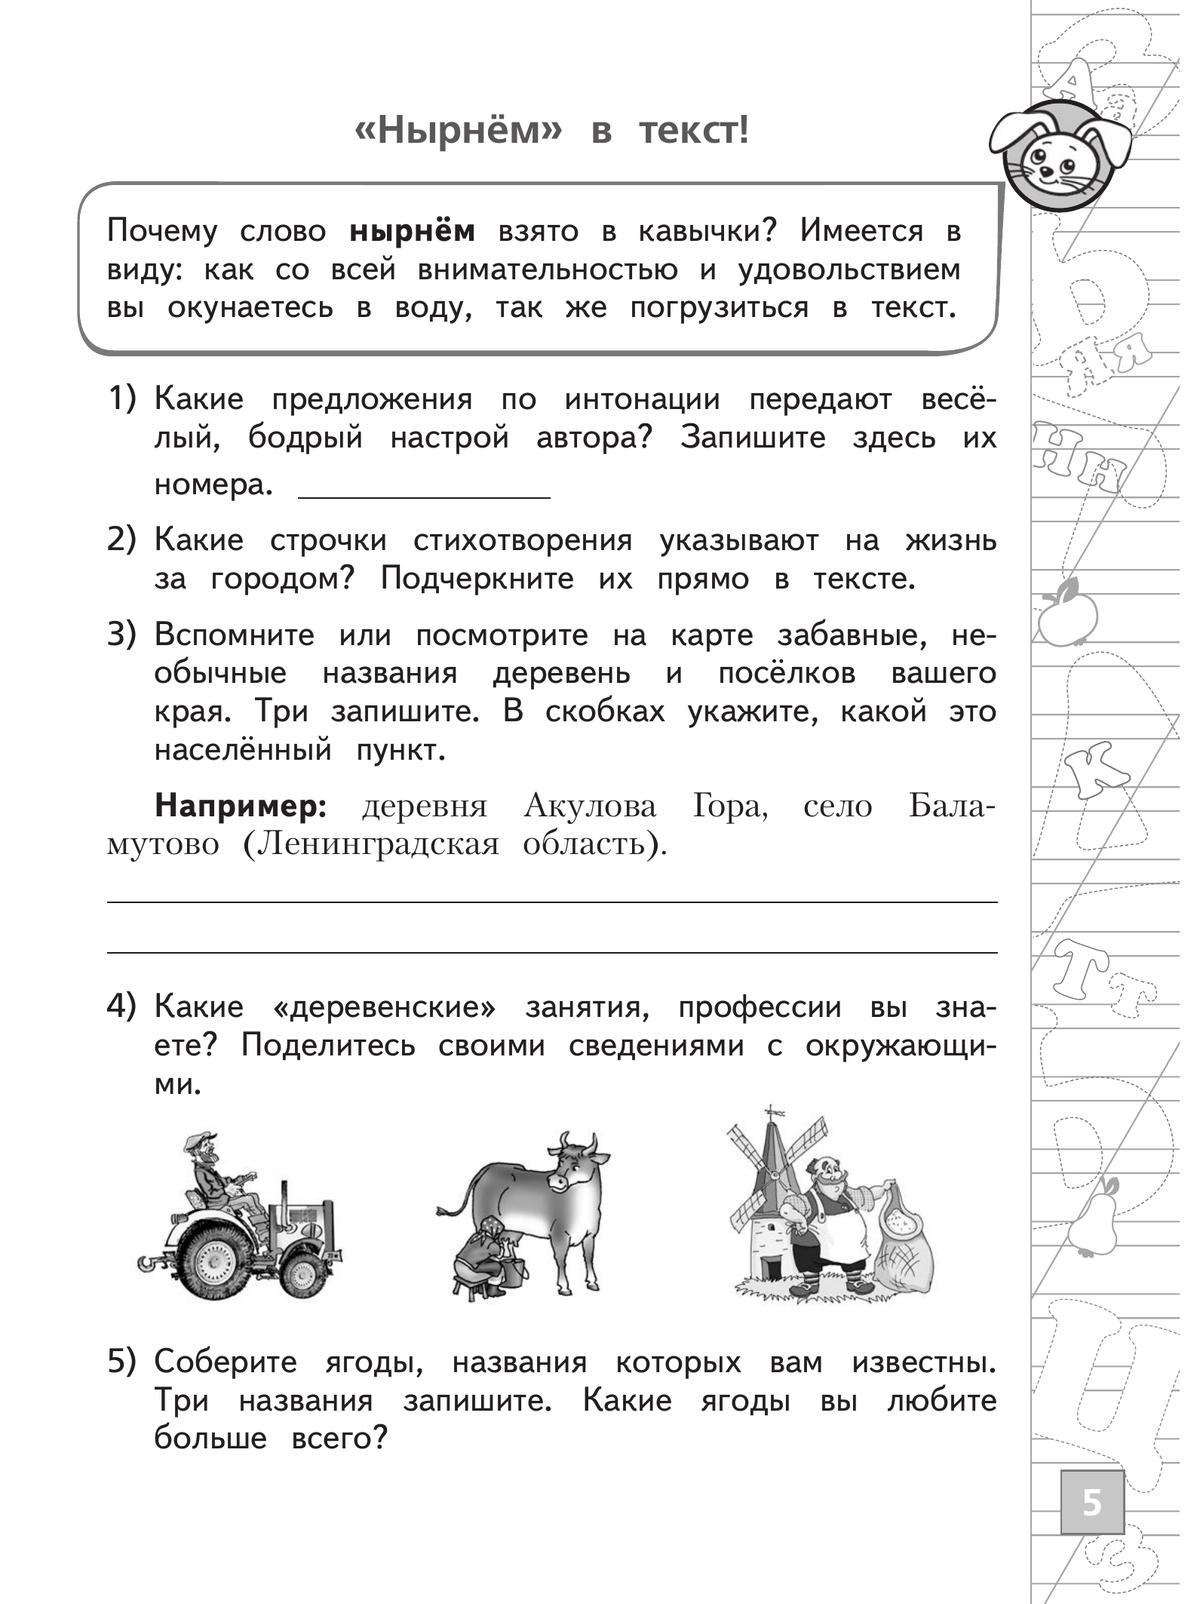 Русский язык. Тетрадь летних заданий. 2 класс 6